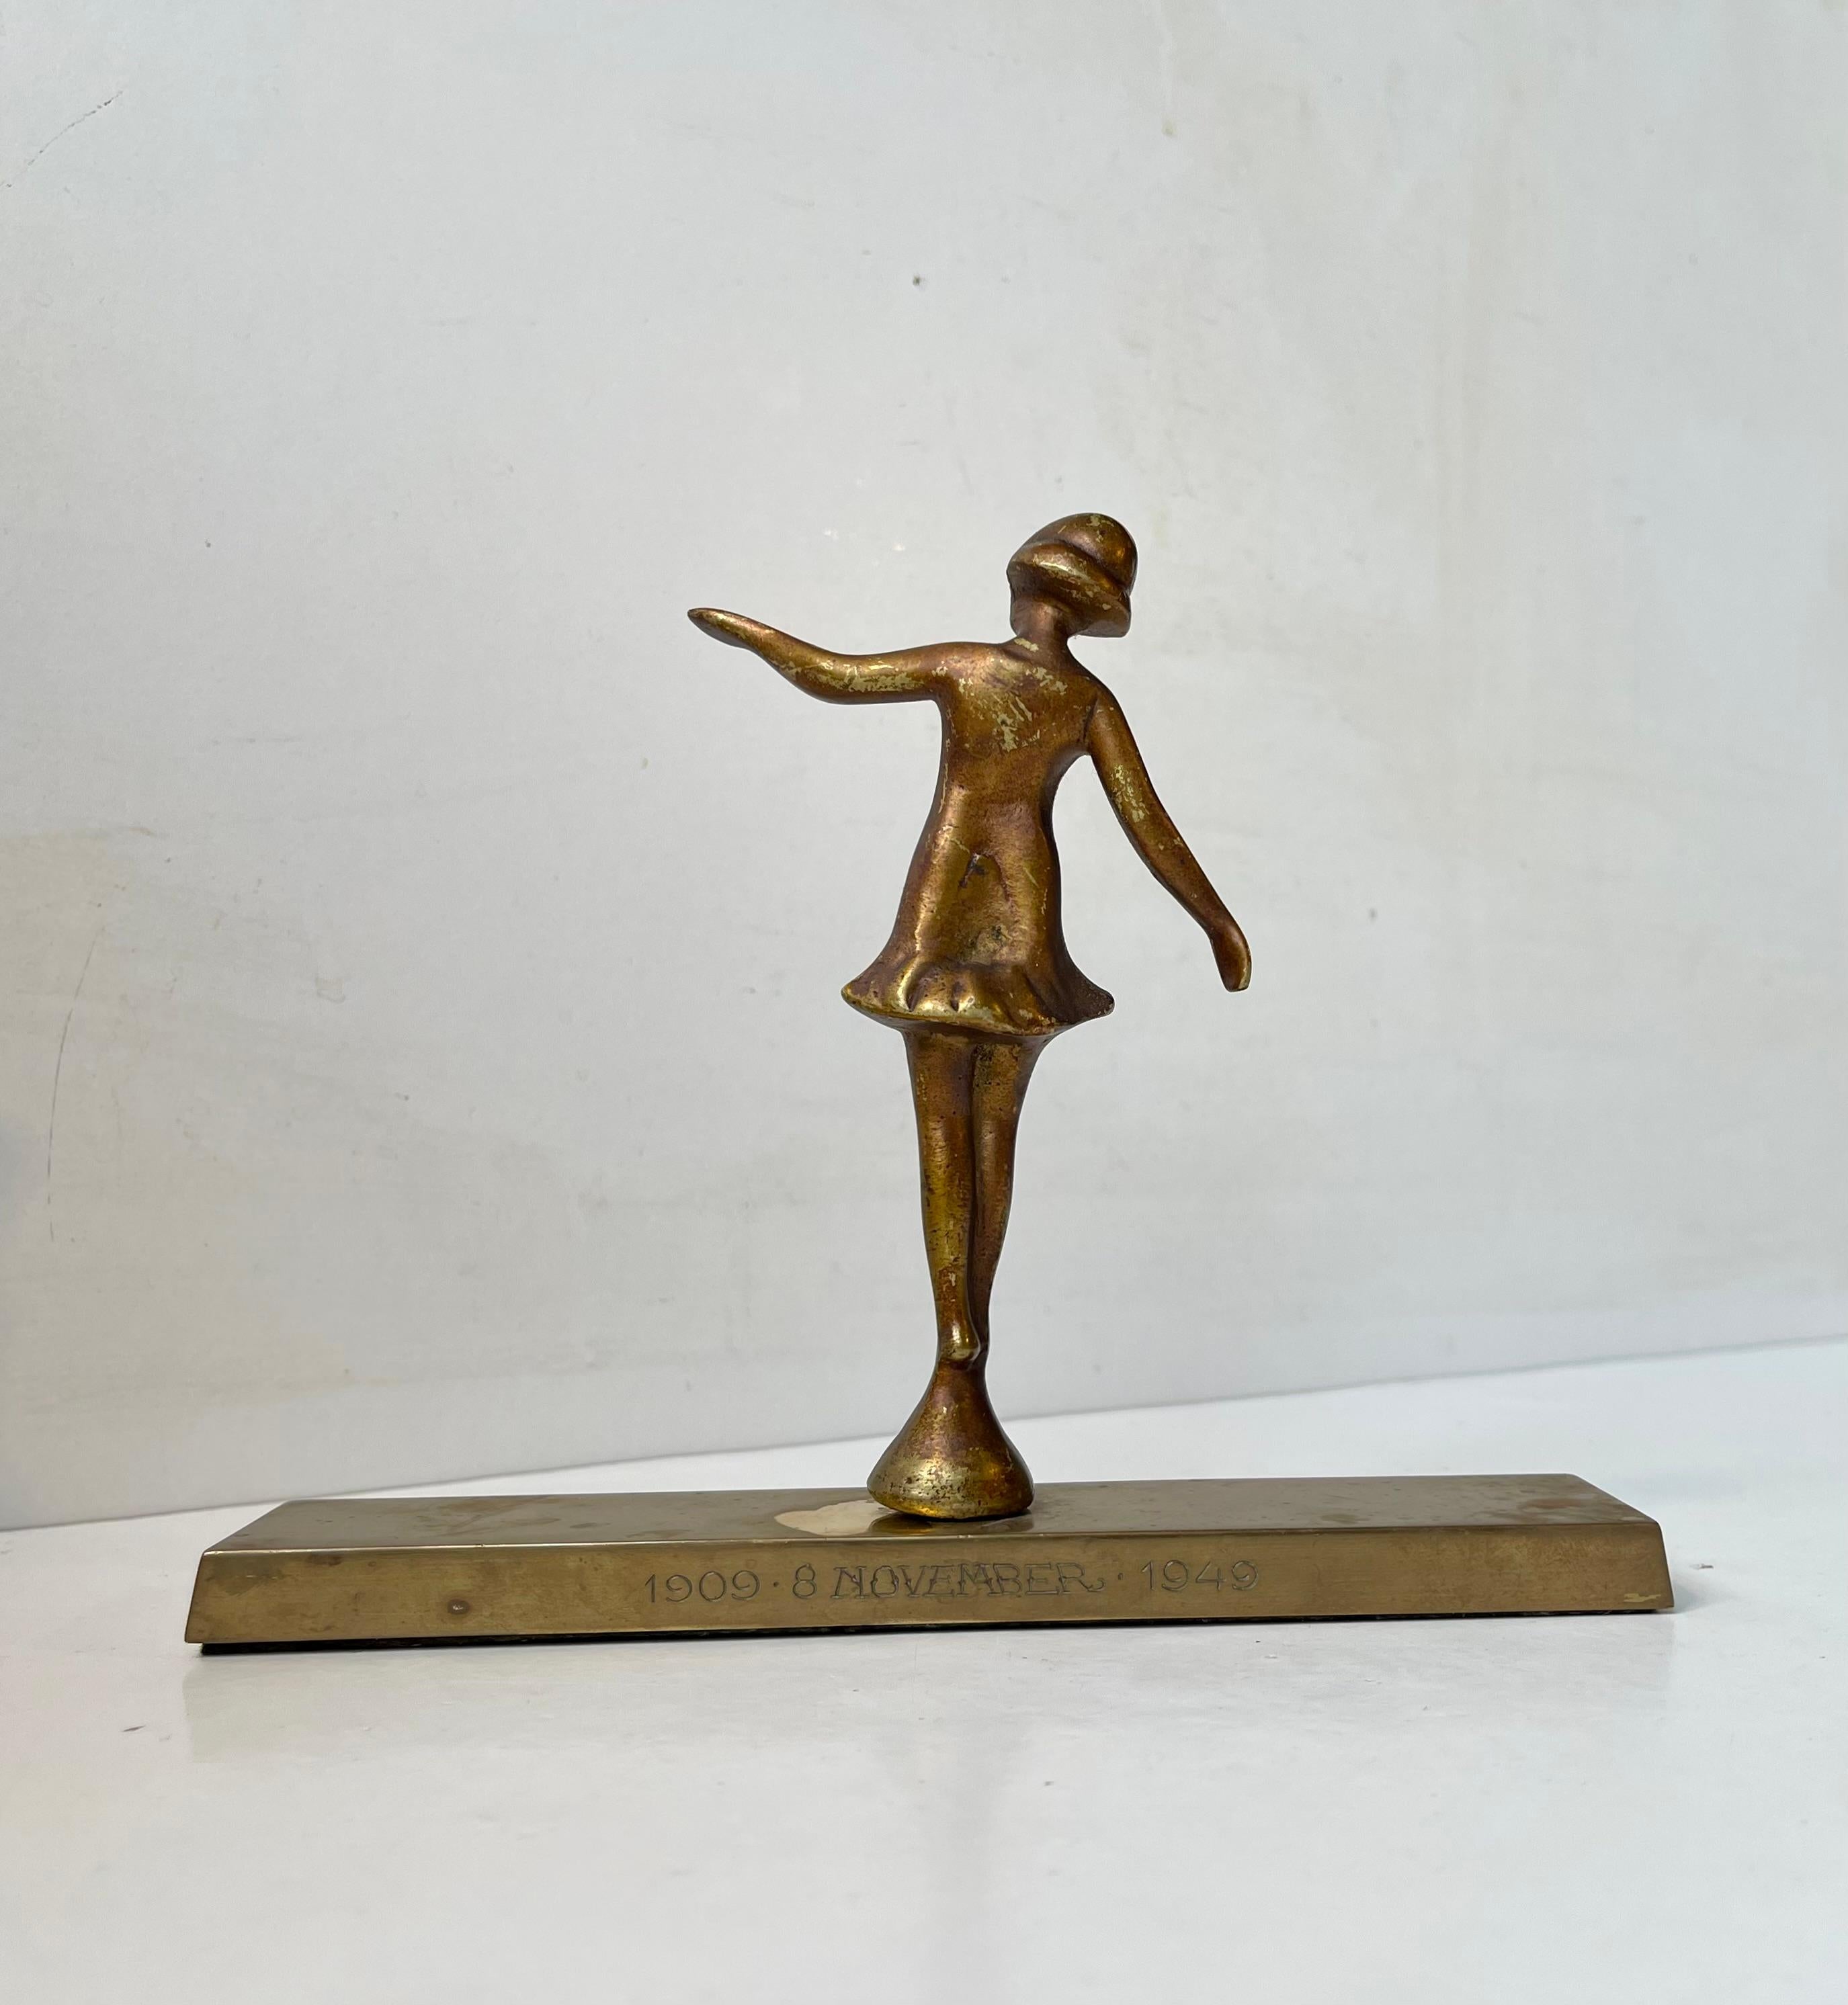 European Art Deco Desk Ballerina Sculpture in Bronze, 1940s For Sale